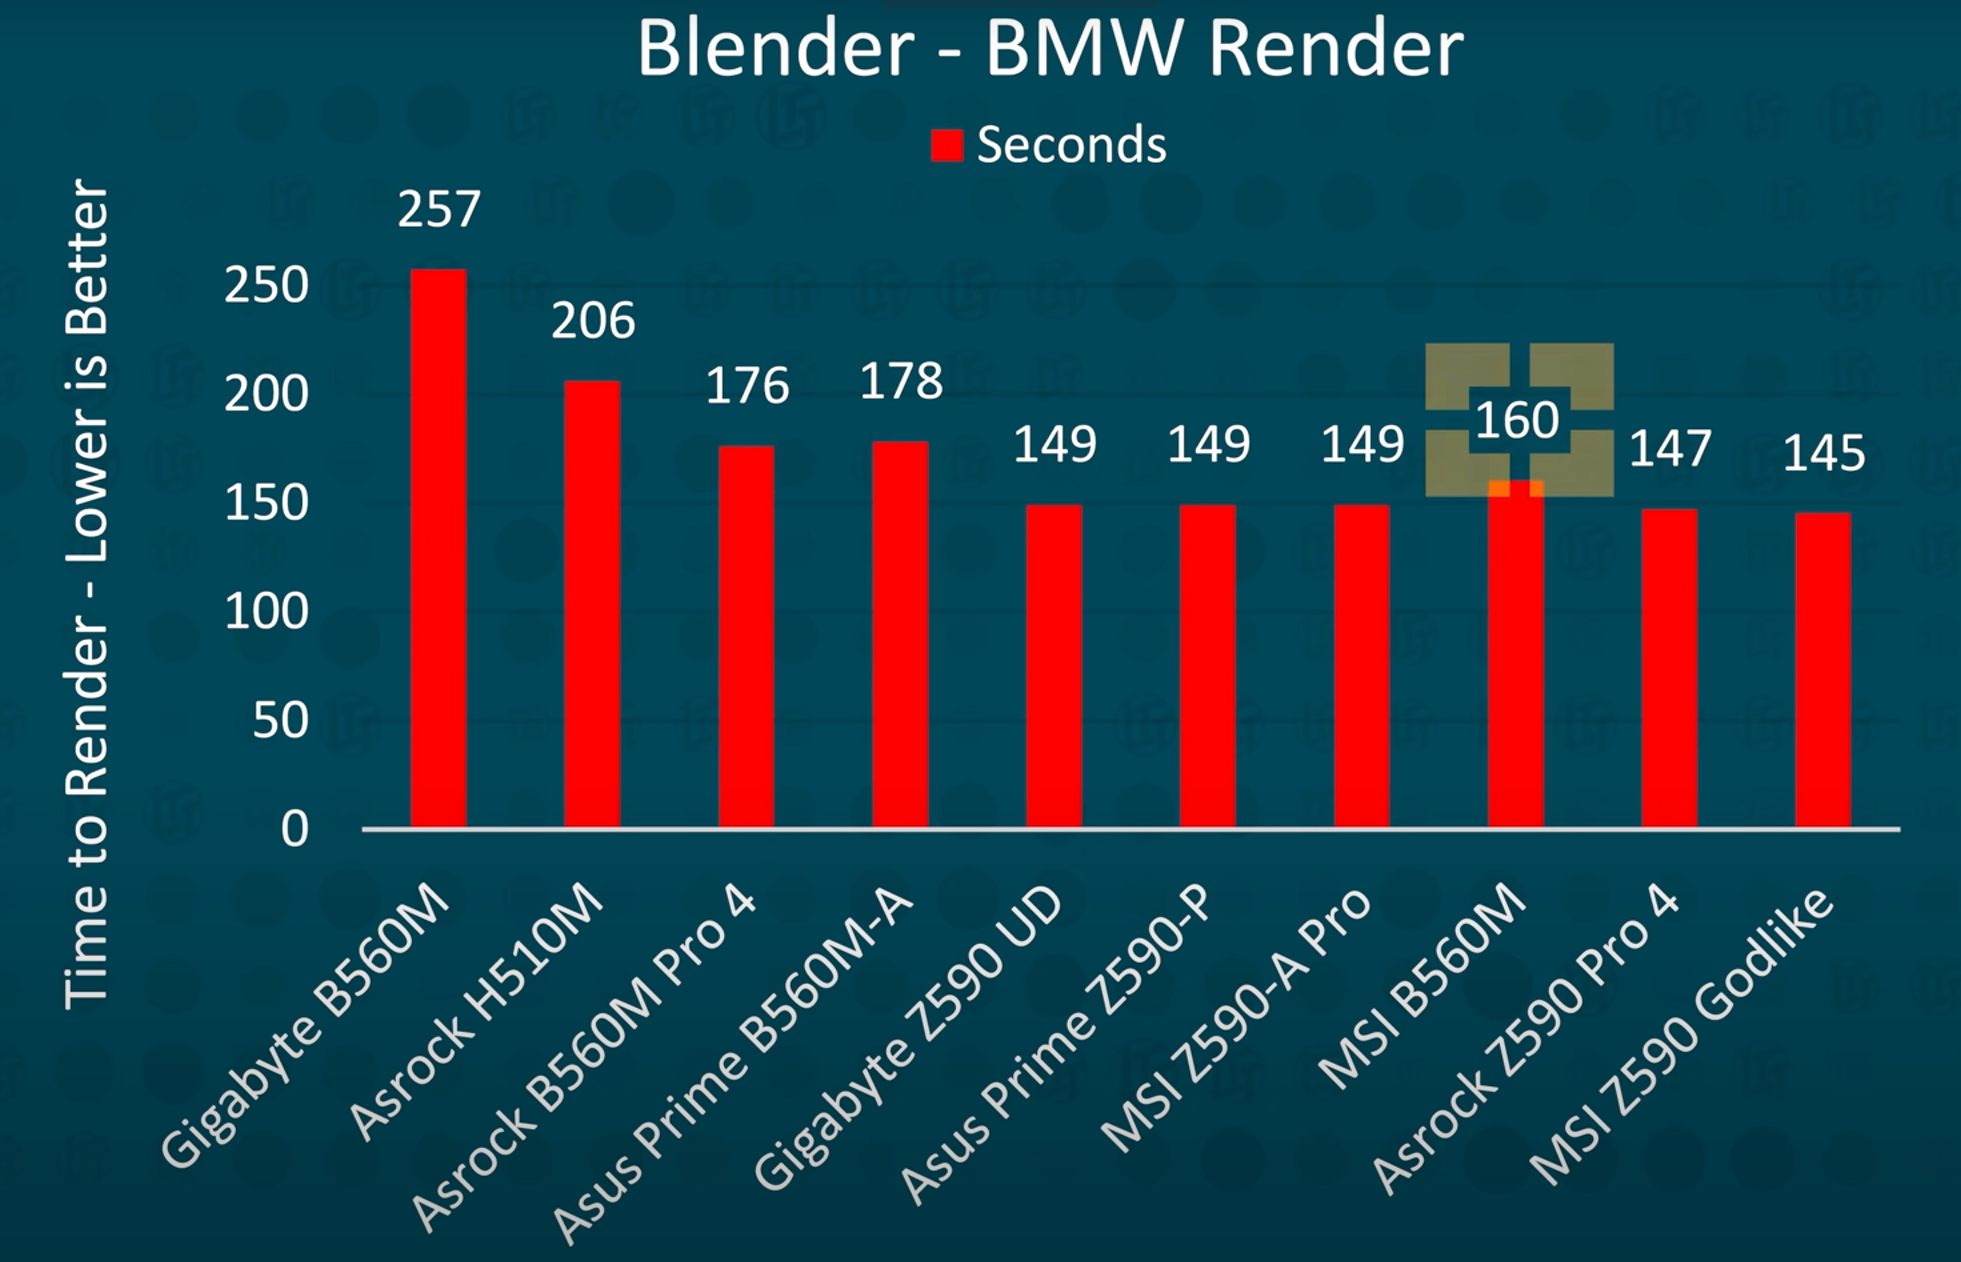 Blender - BMW render time for high-end motherboards